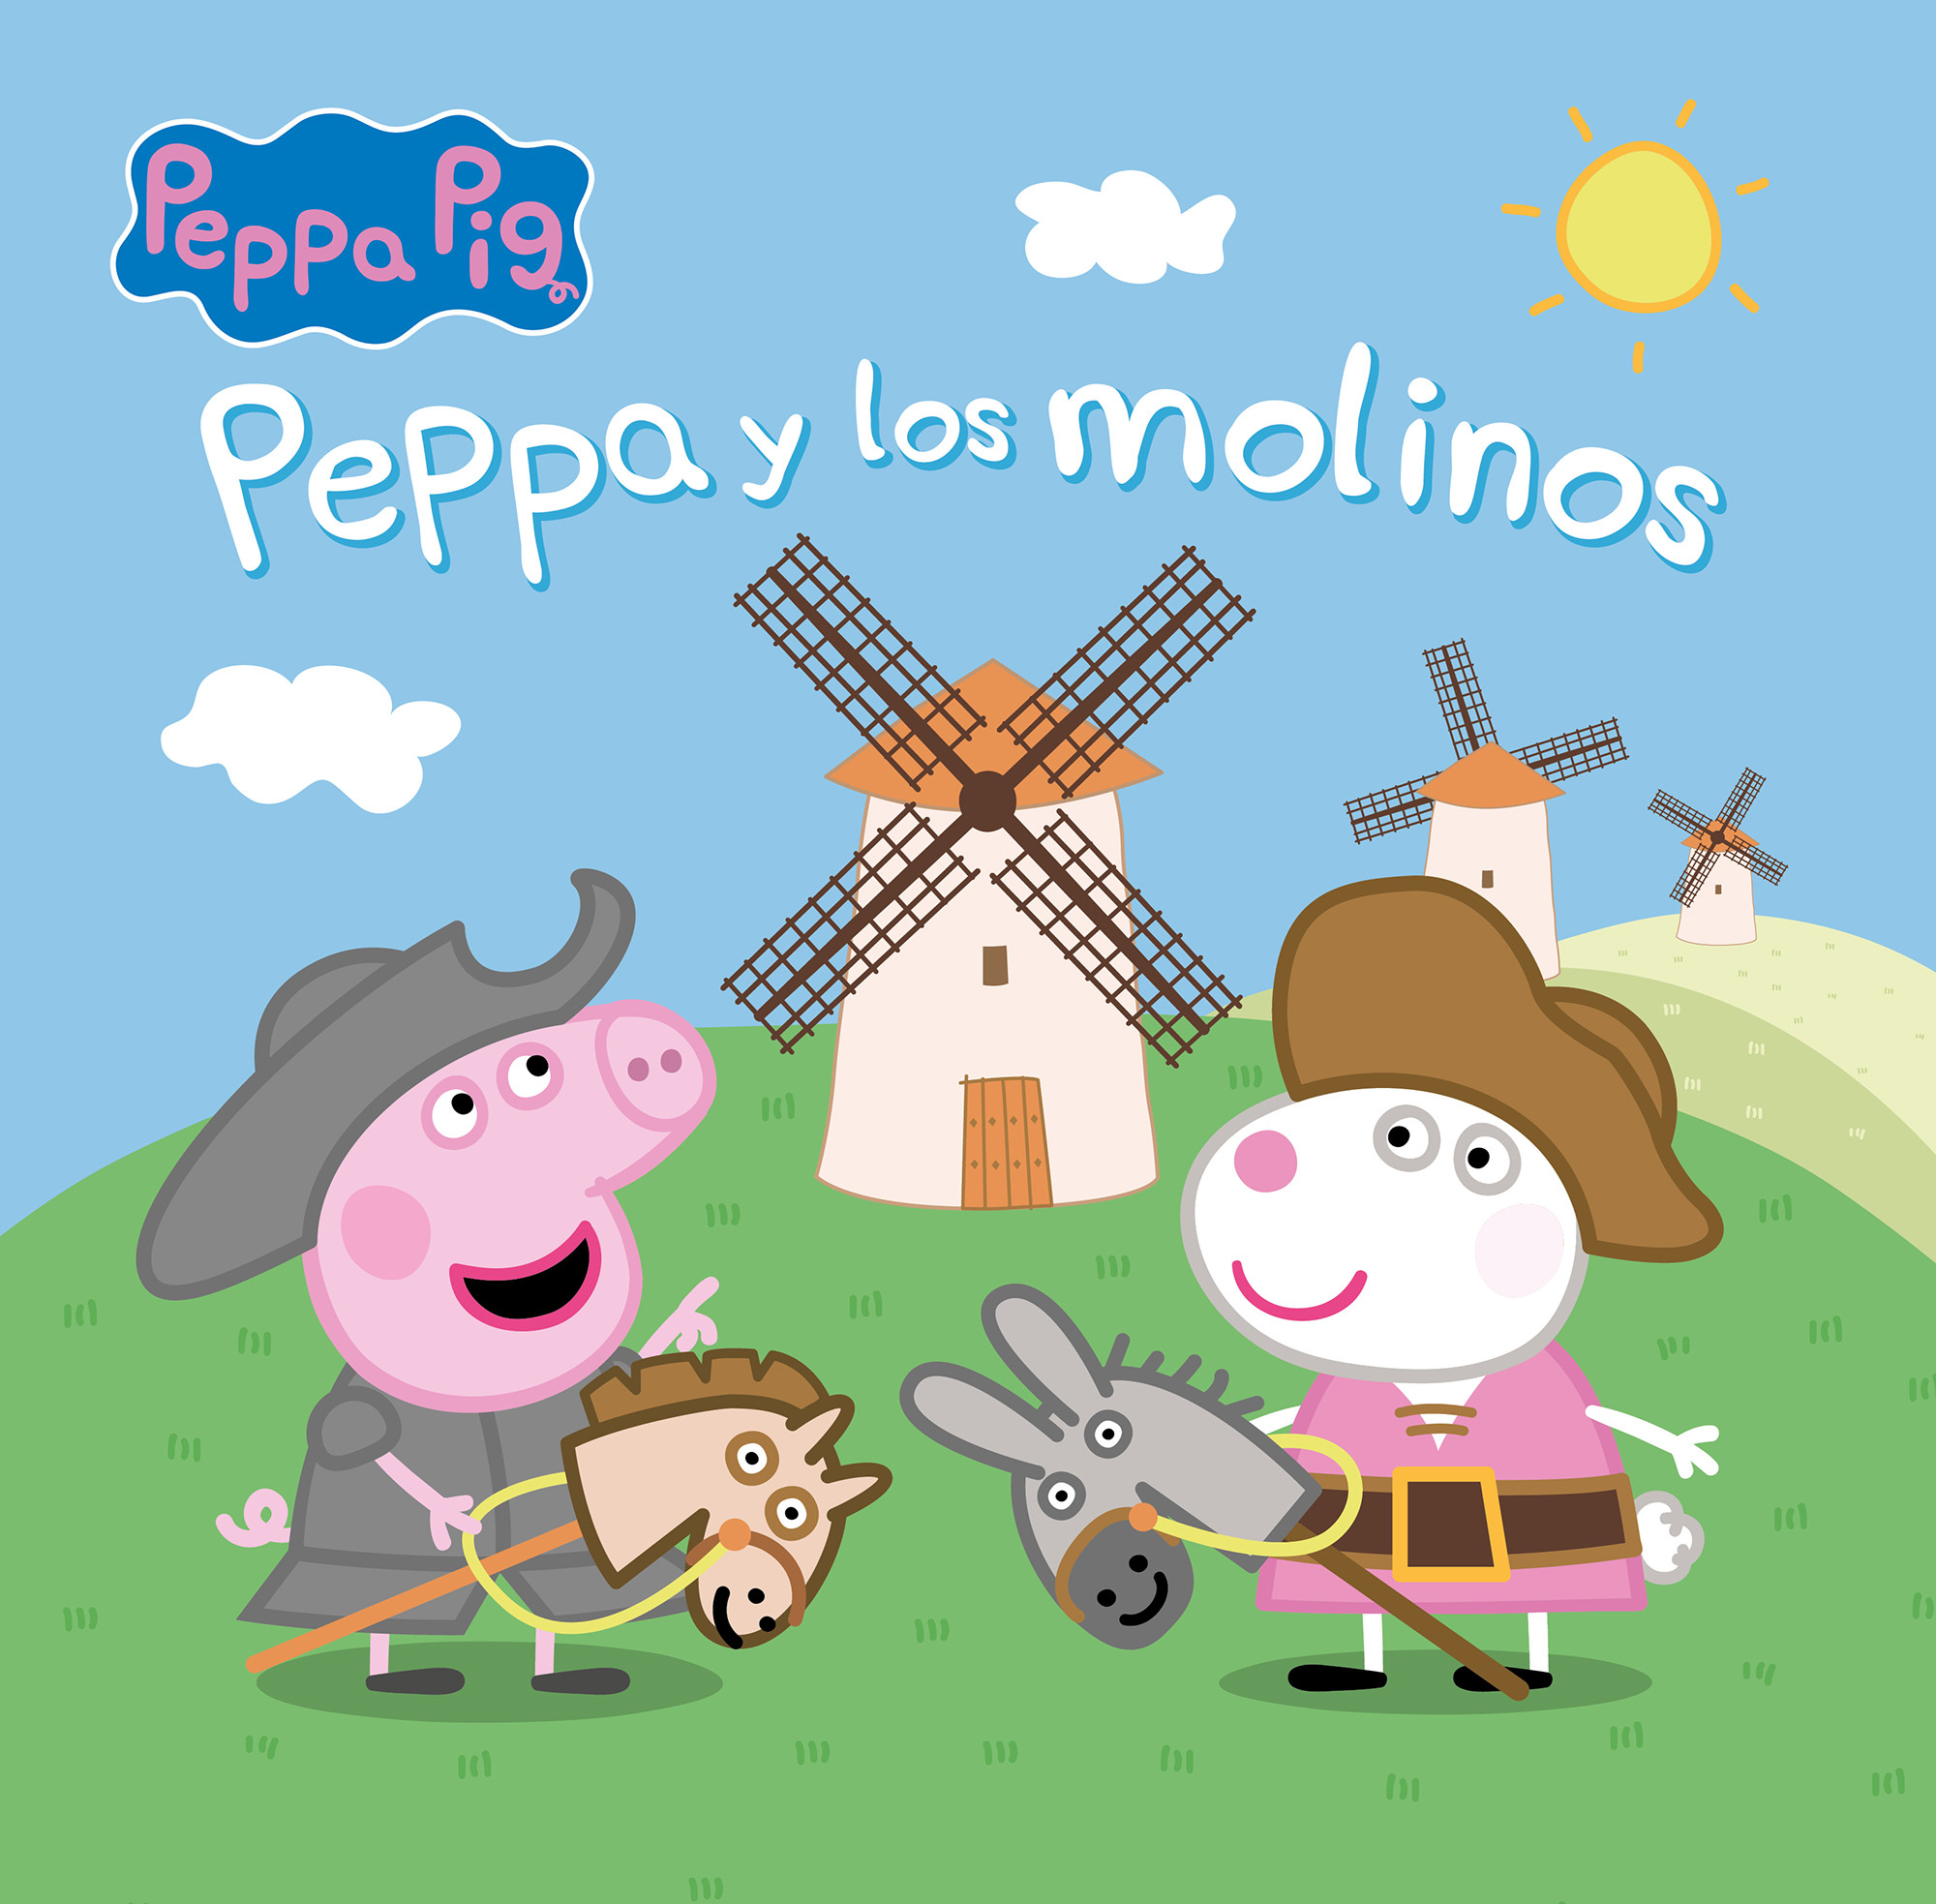 Peppa Pig viaja a La Mancha de Don Quijote en su nueva aventura